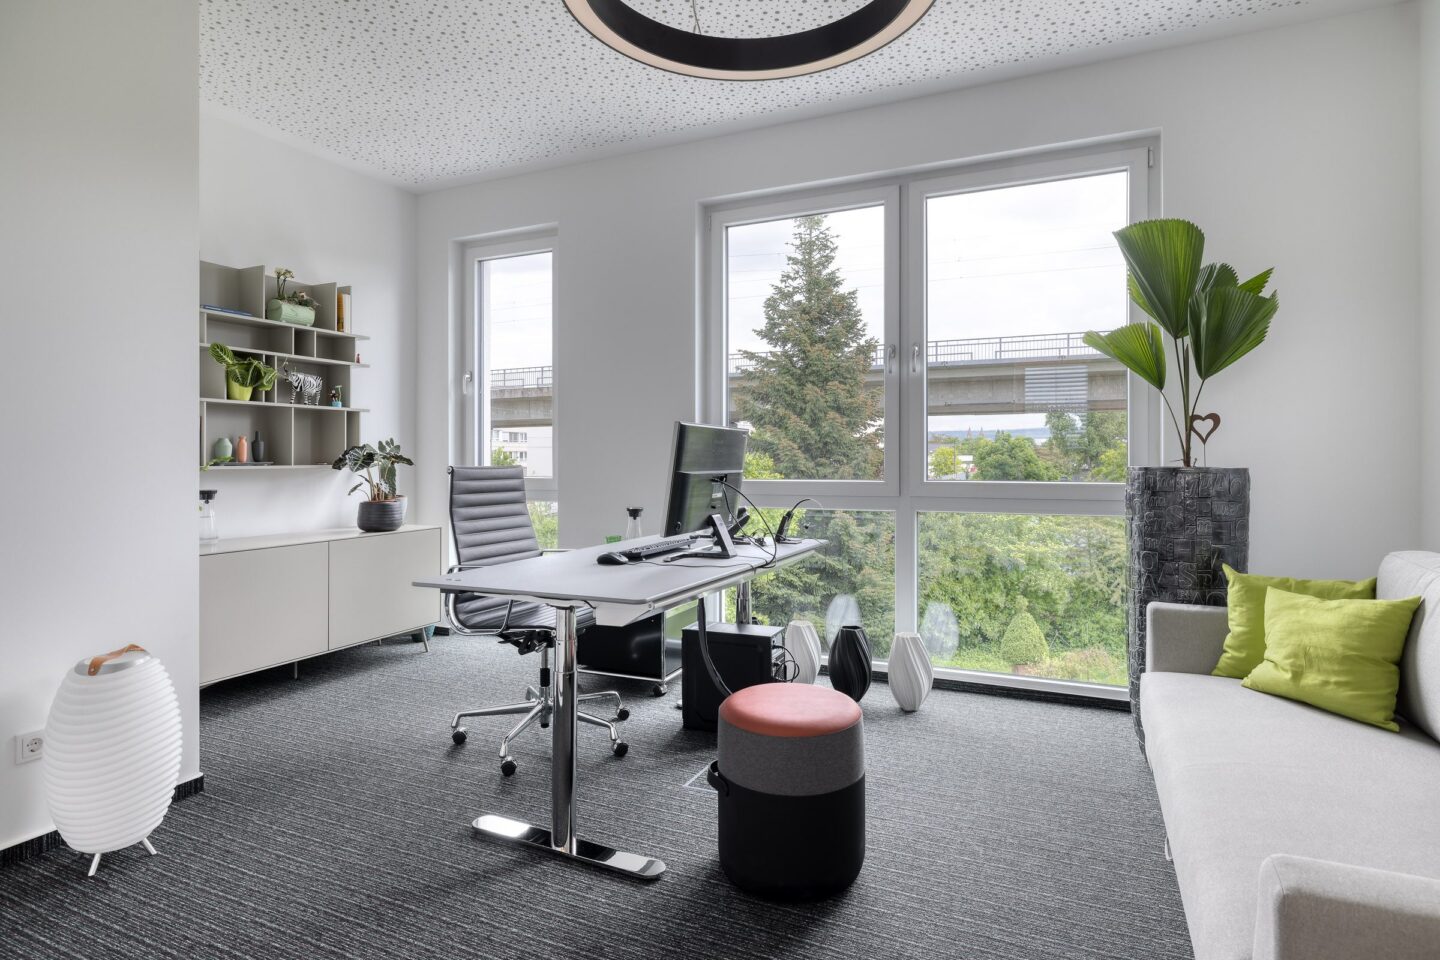 Geplant und gestaltet wurden die Büroräume mit dem feco-Team, die biophiles Design und moderne Arbeitswelten miteinander verbinden.